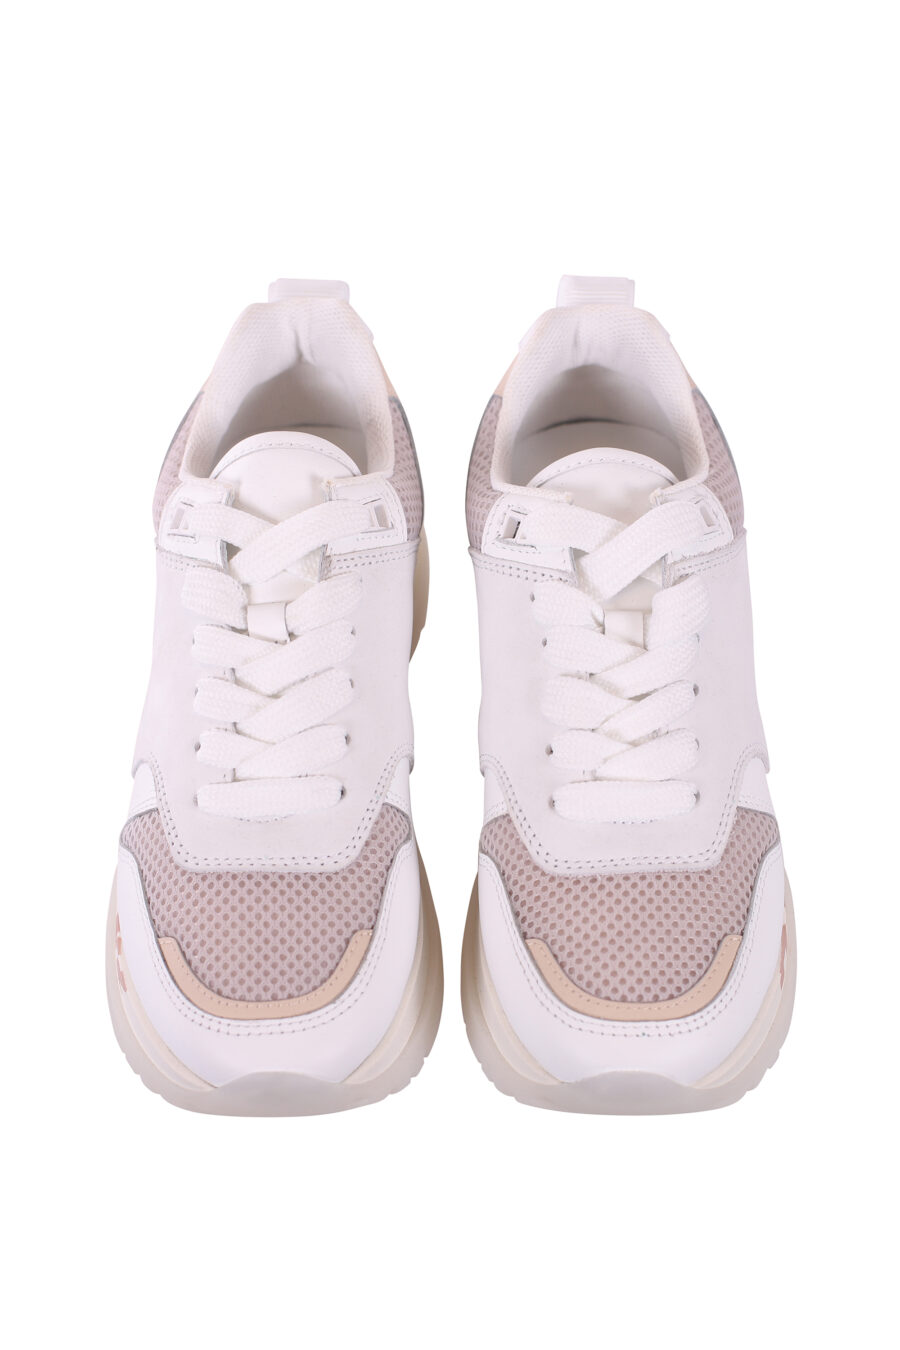 Zapatillas blancas con detalles grises y logo en suela - IMG 5693